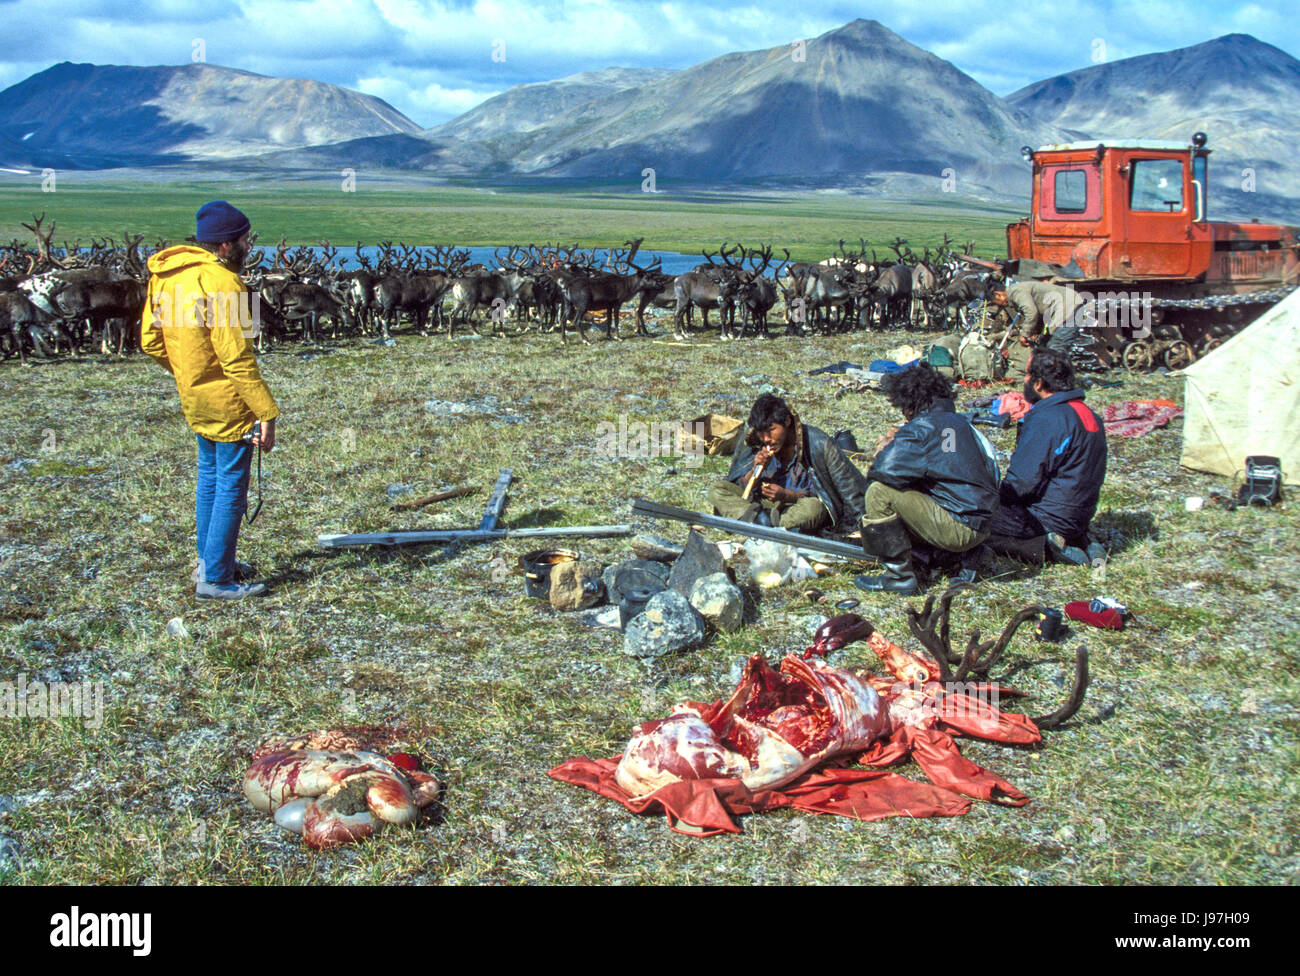 La préparation pour rôtir un renne pour les invités à un Tchouktche nomade yourte des éleveurs de rennes sur le campement des Tchouktches ou péninsule Chukotka, dans la Fédération de F Banque D'Images